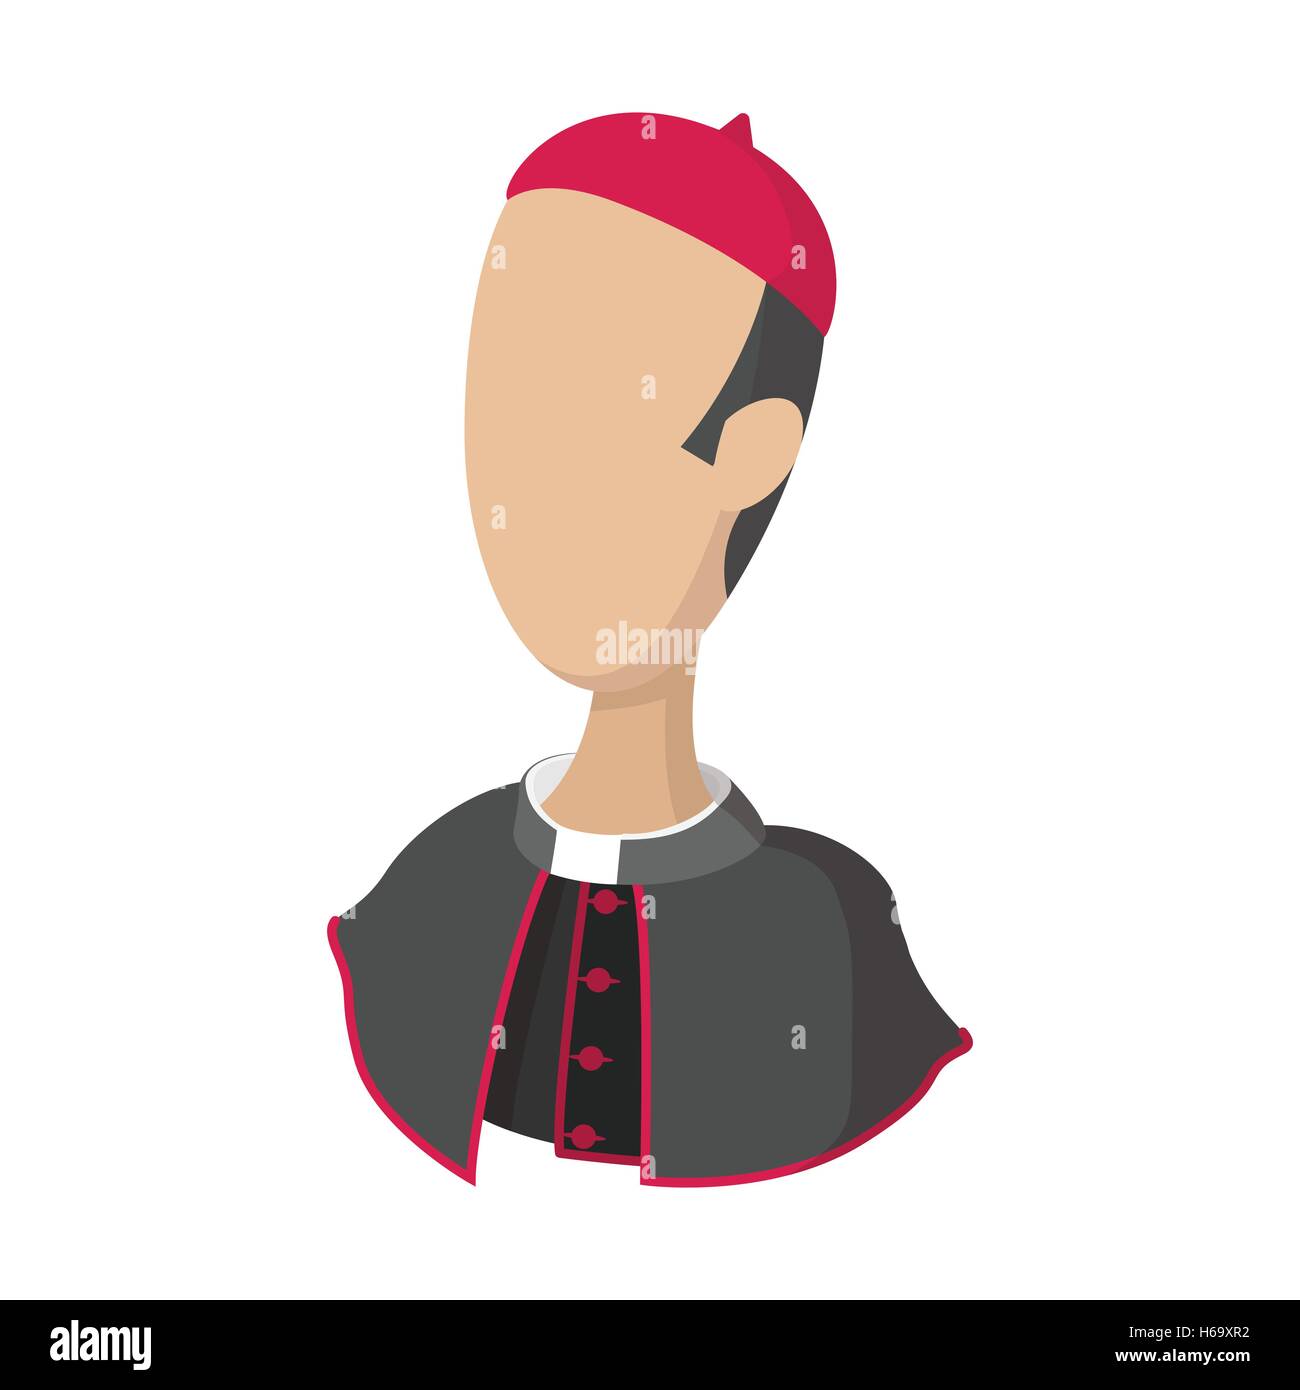 Cardinal, catholic priest cartoon icon Stock Vector